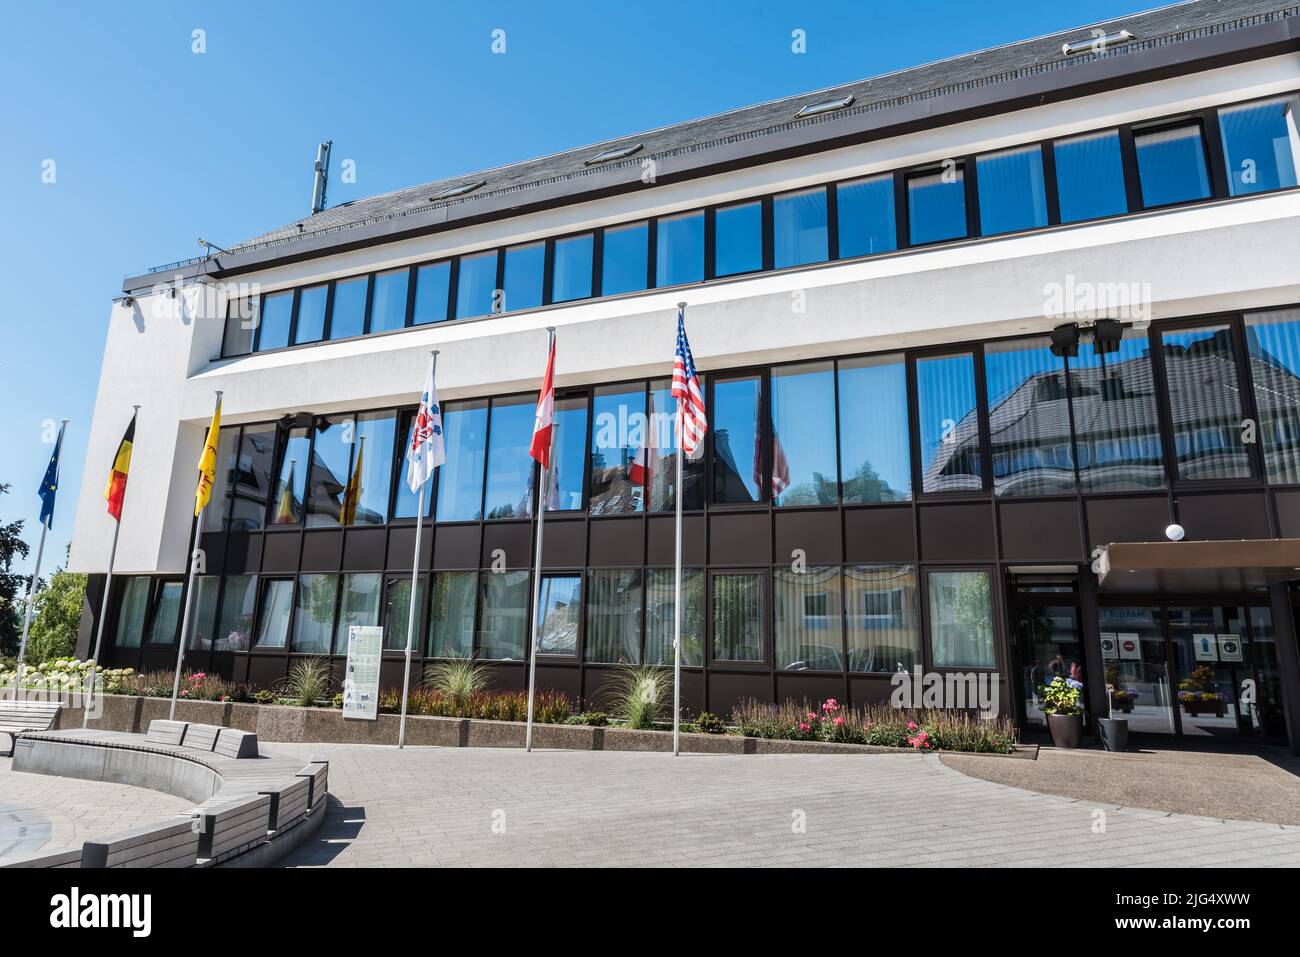 Sankt Vith, Belgien, 07 30 2020 - Zeitgenössische Fassade des Rathauses des Dorfes Stockfoto